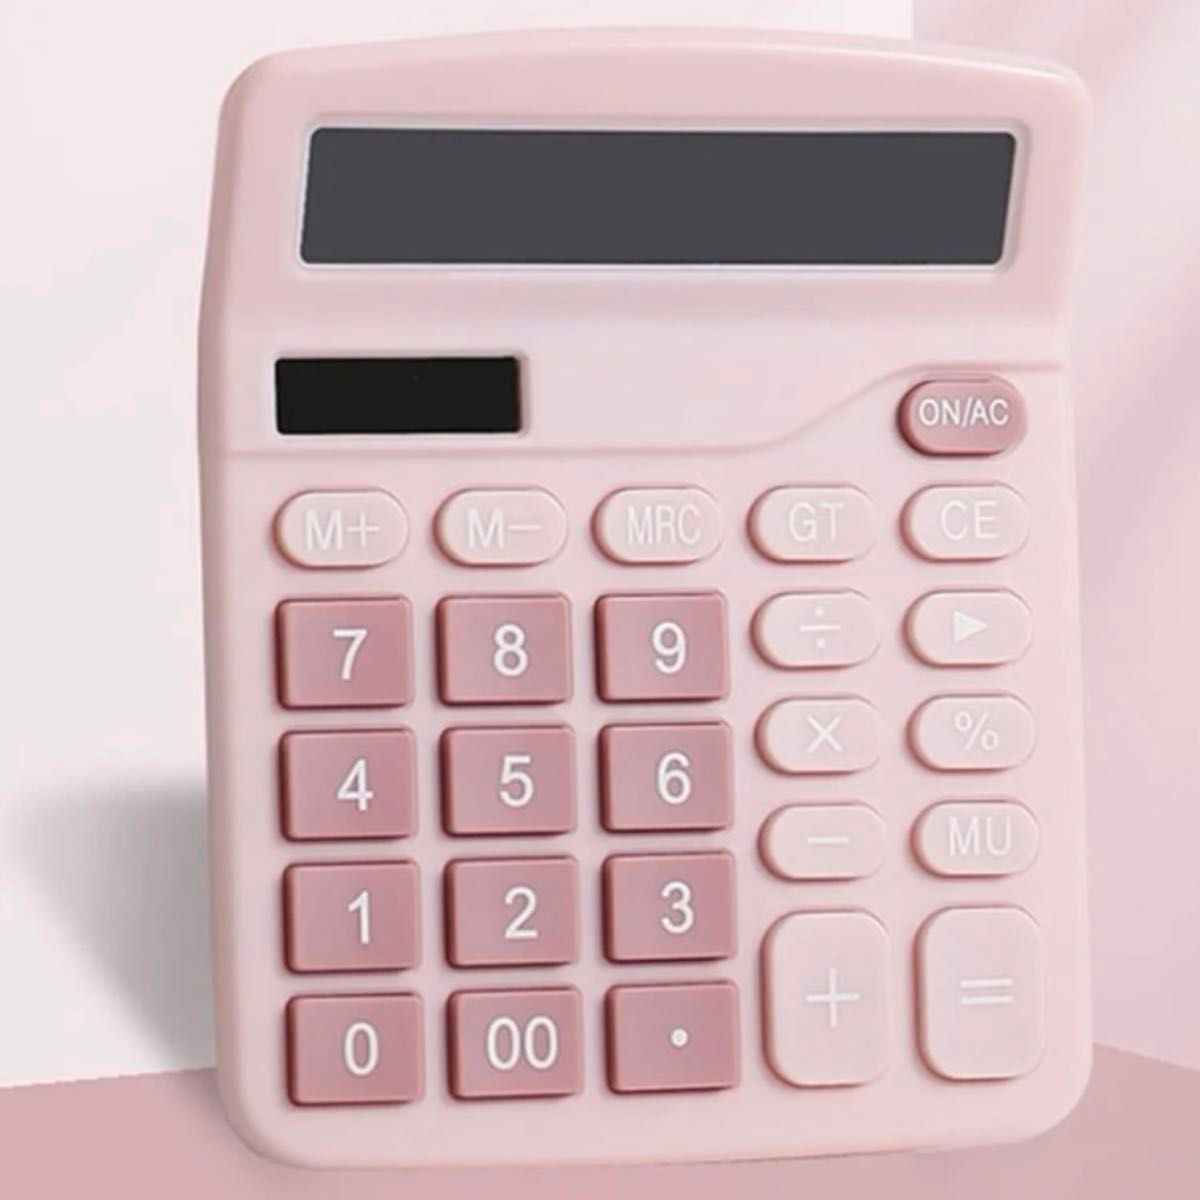 ソーラー電卓 電池いらず ピンクの電卓 計算機 家計簿 事務用品 オフィス用品 文房具 ステーショナリー 可愛い電卓 かわいい電卓